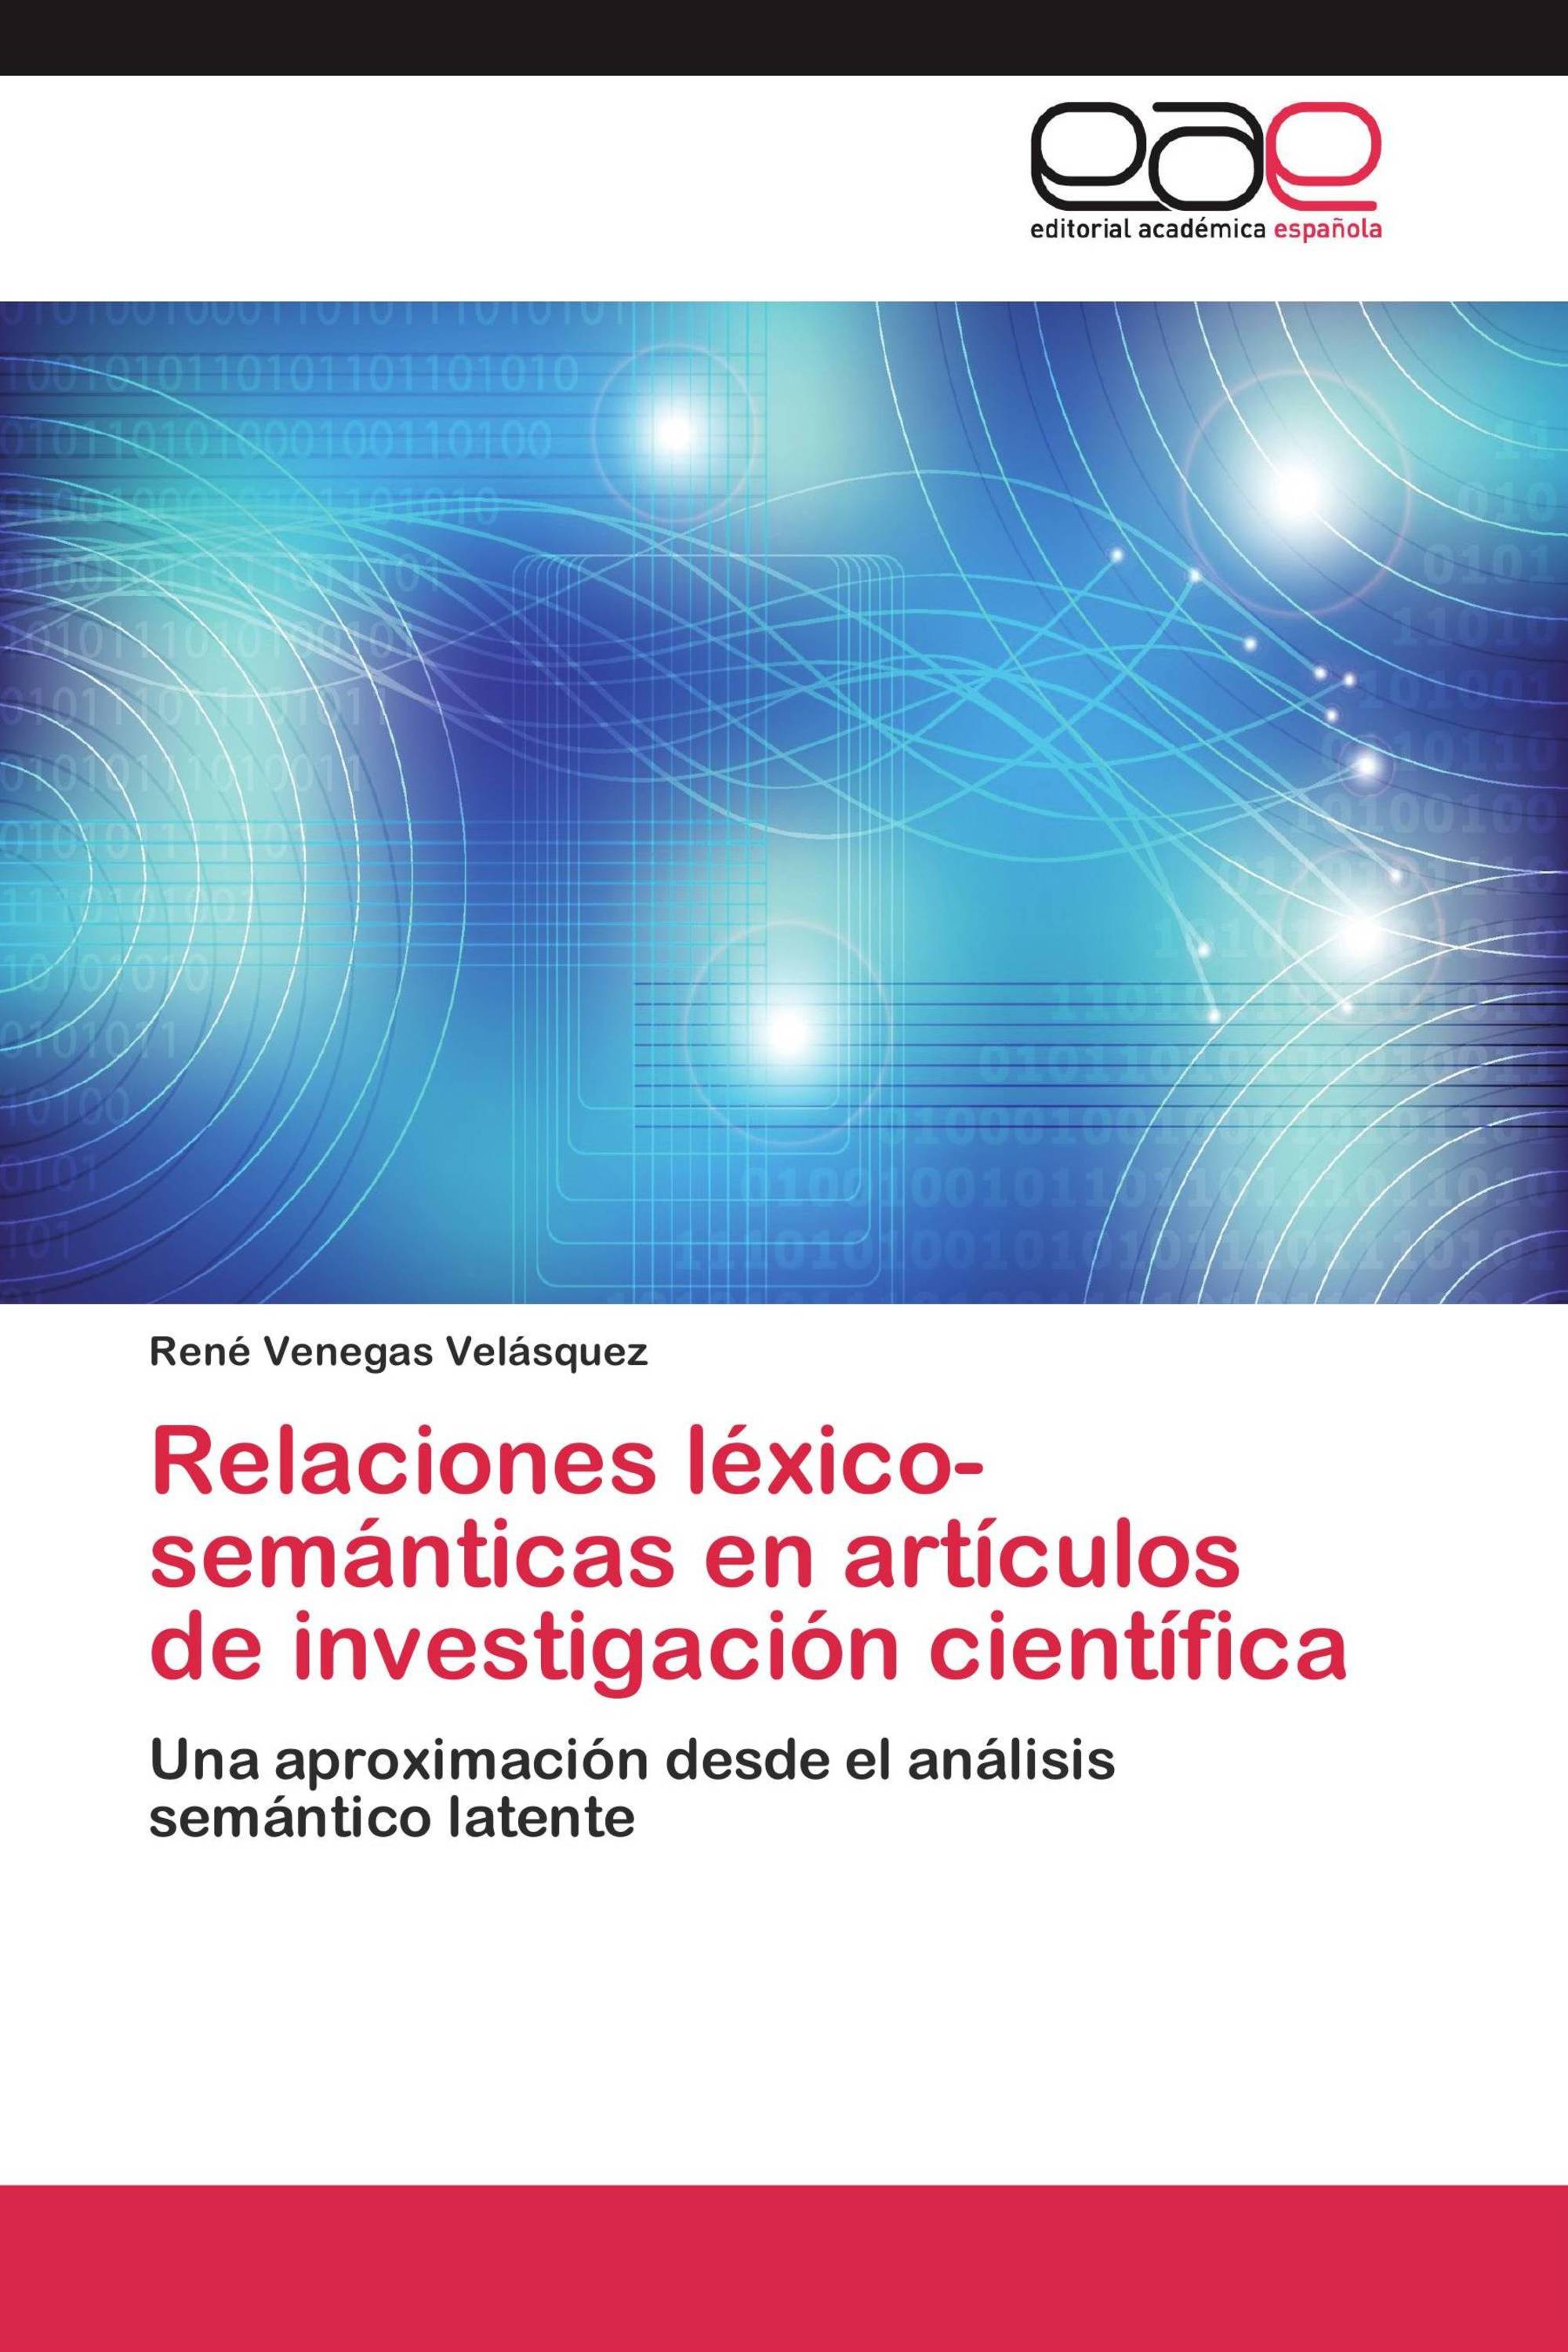 Relaciones léxico-semánticas en artículos de investigación científica